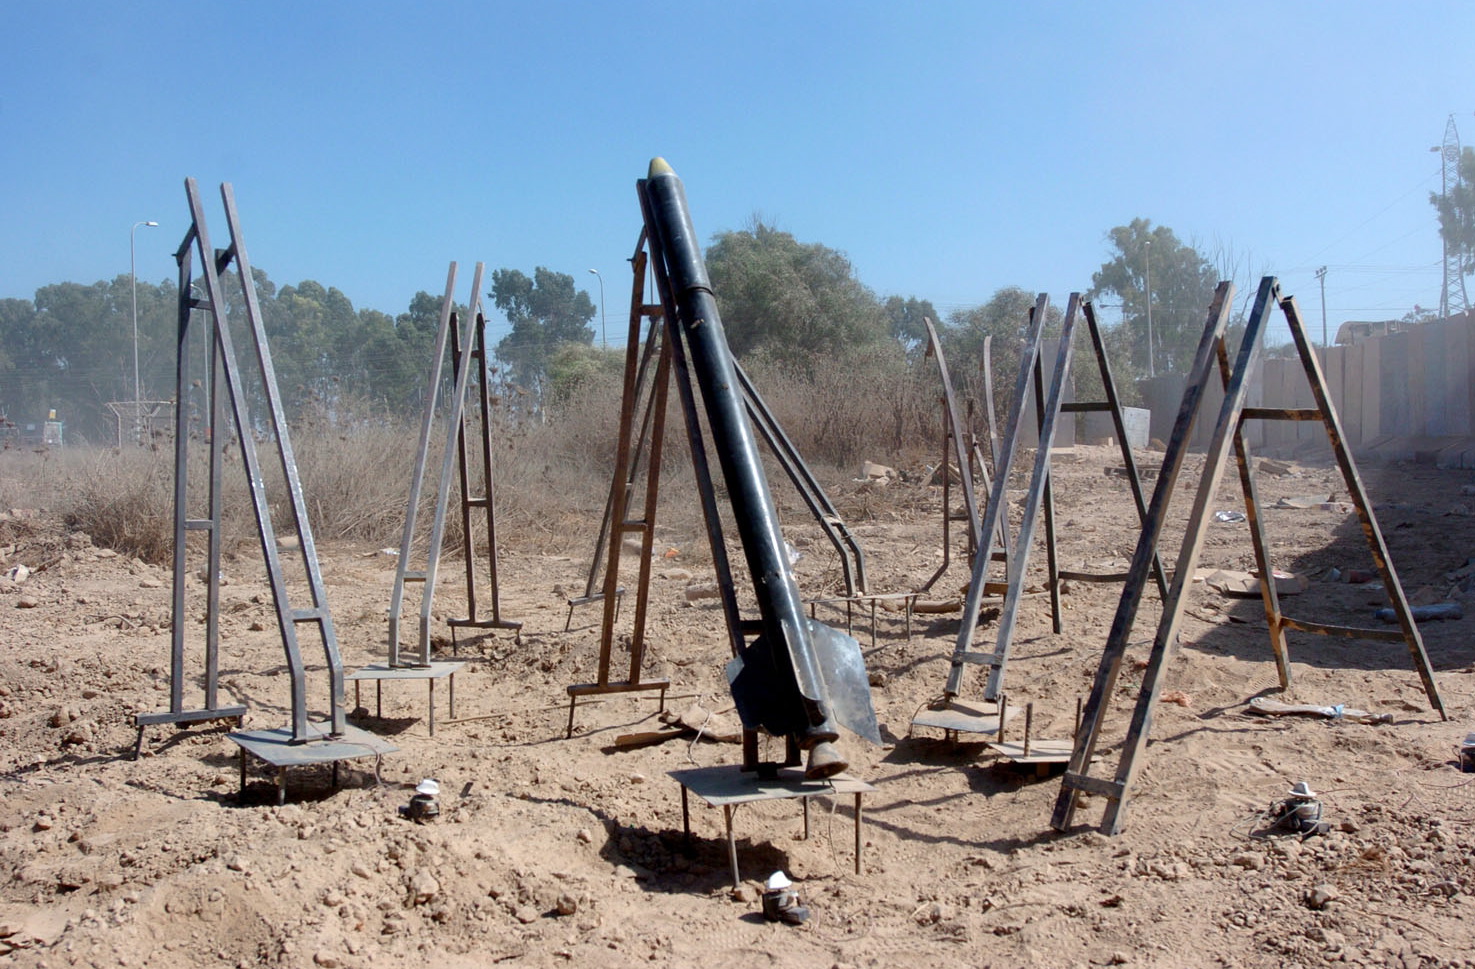 Un razzo Qassam in posizione di lancio. Osservandolo si nota quanto sia rudimentale nella forma e nella realizzazione.